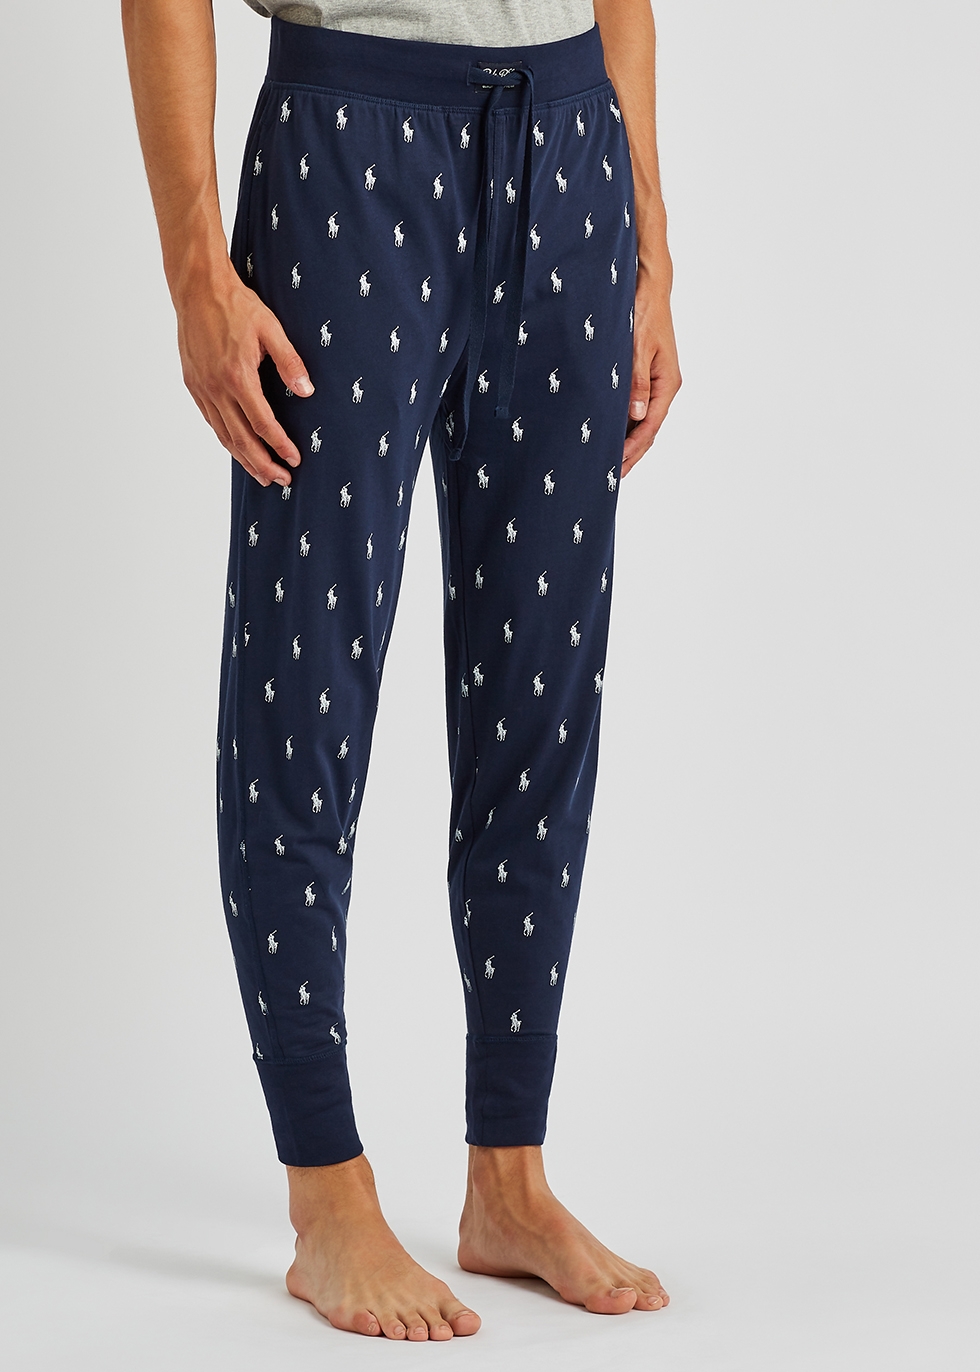 Polo Ralph Lauren Pants for Men  Shop Now on FARFETCH